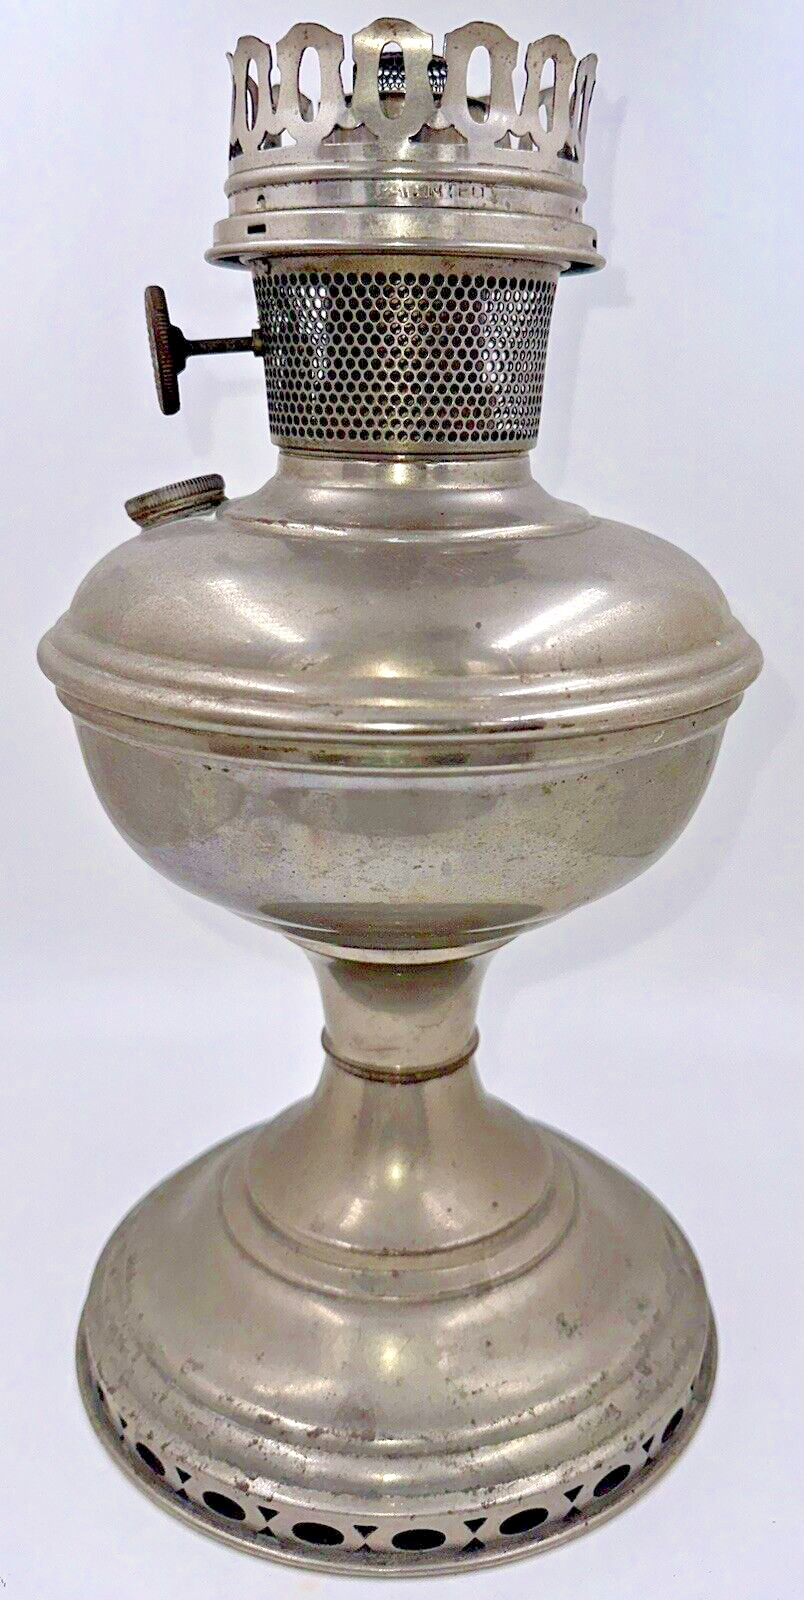 Antique ALADDIN Model 11 Center Draft Kerosene Lamp w/ Flame Spreader, Burner